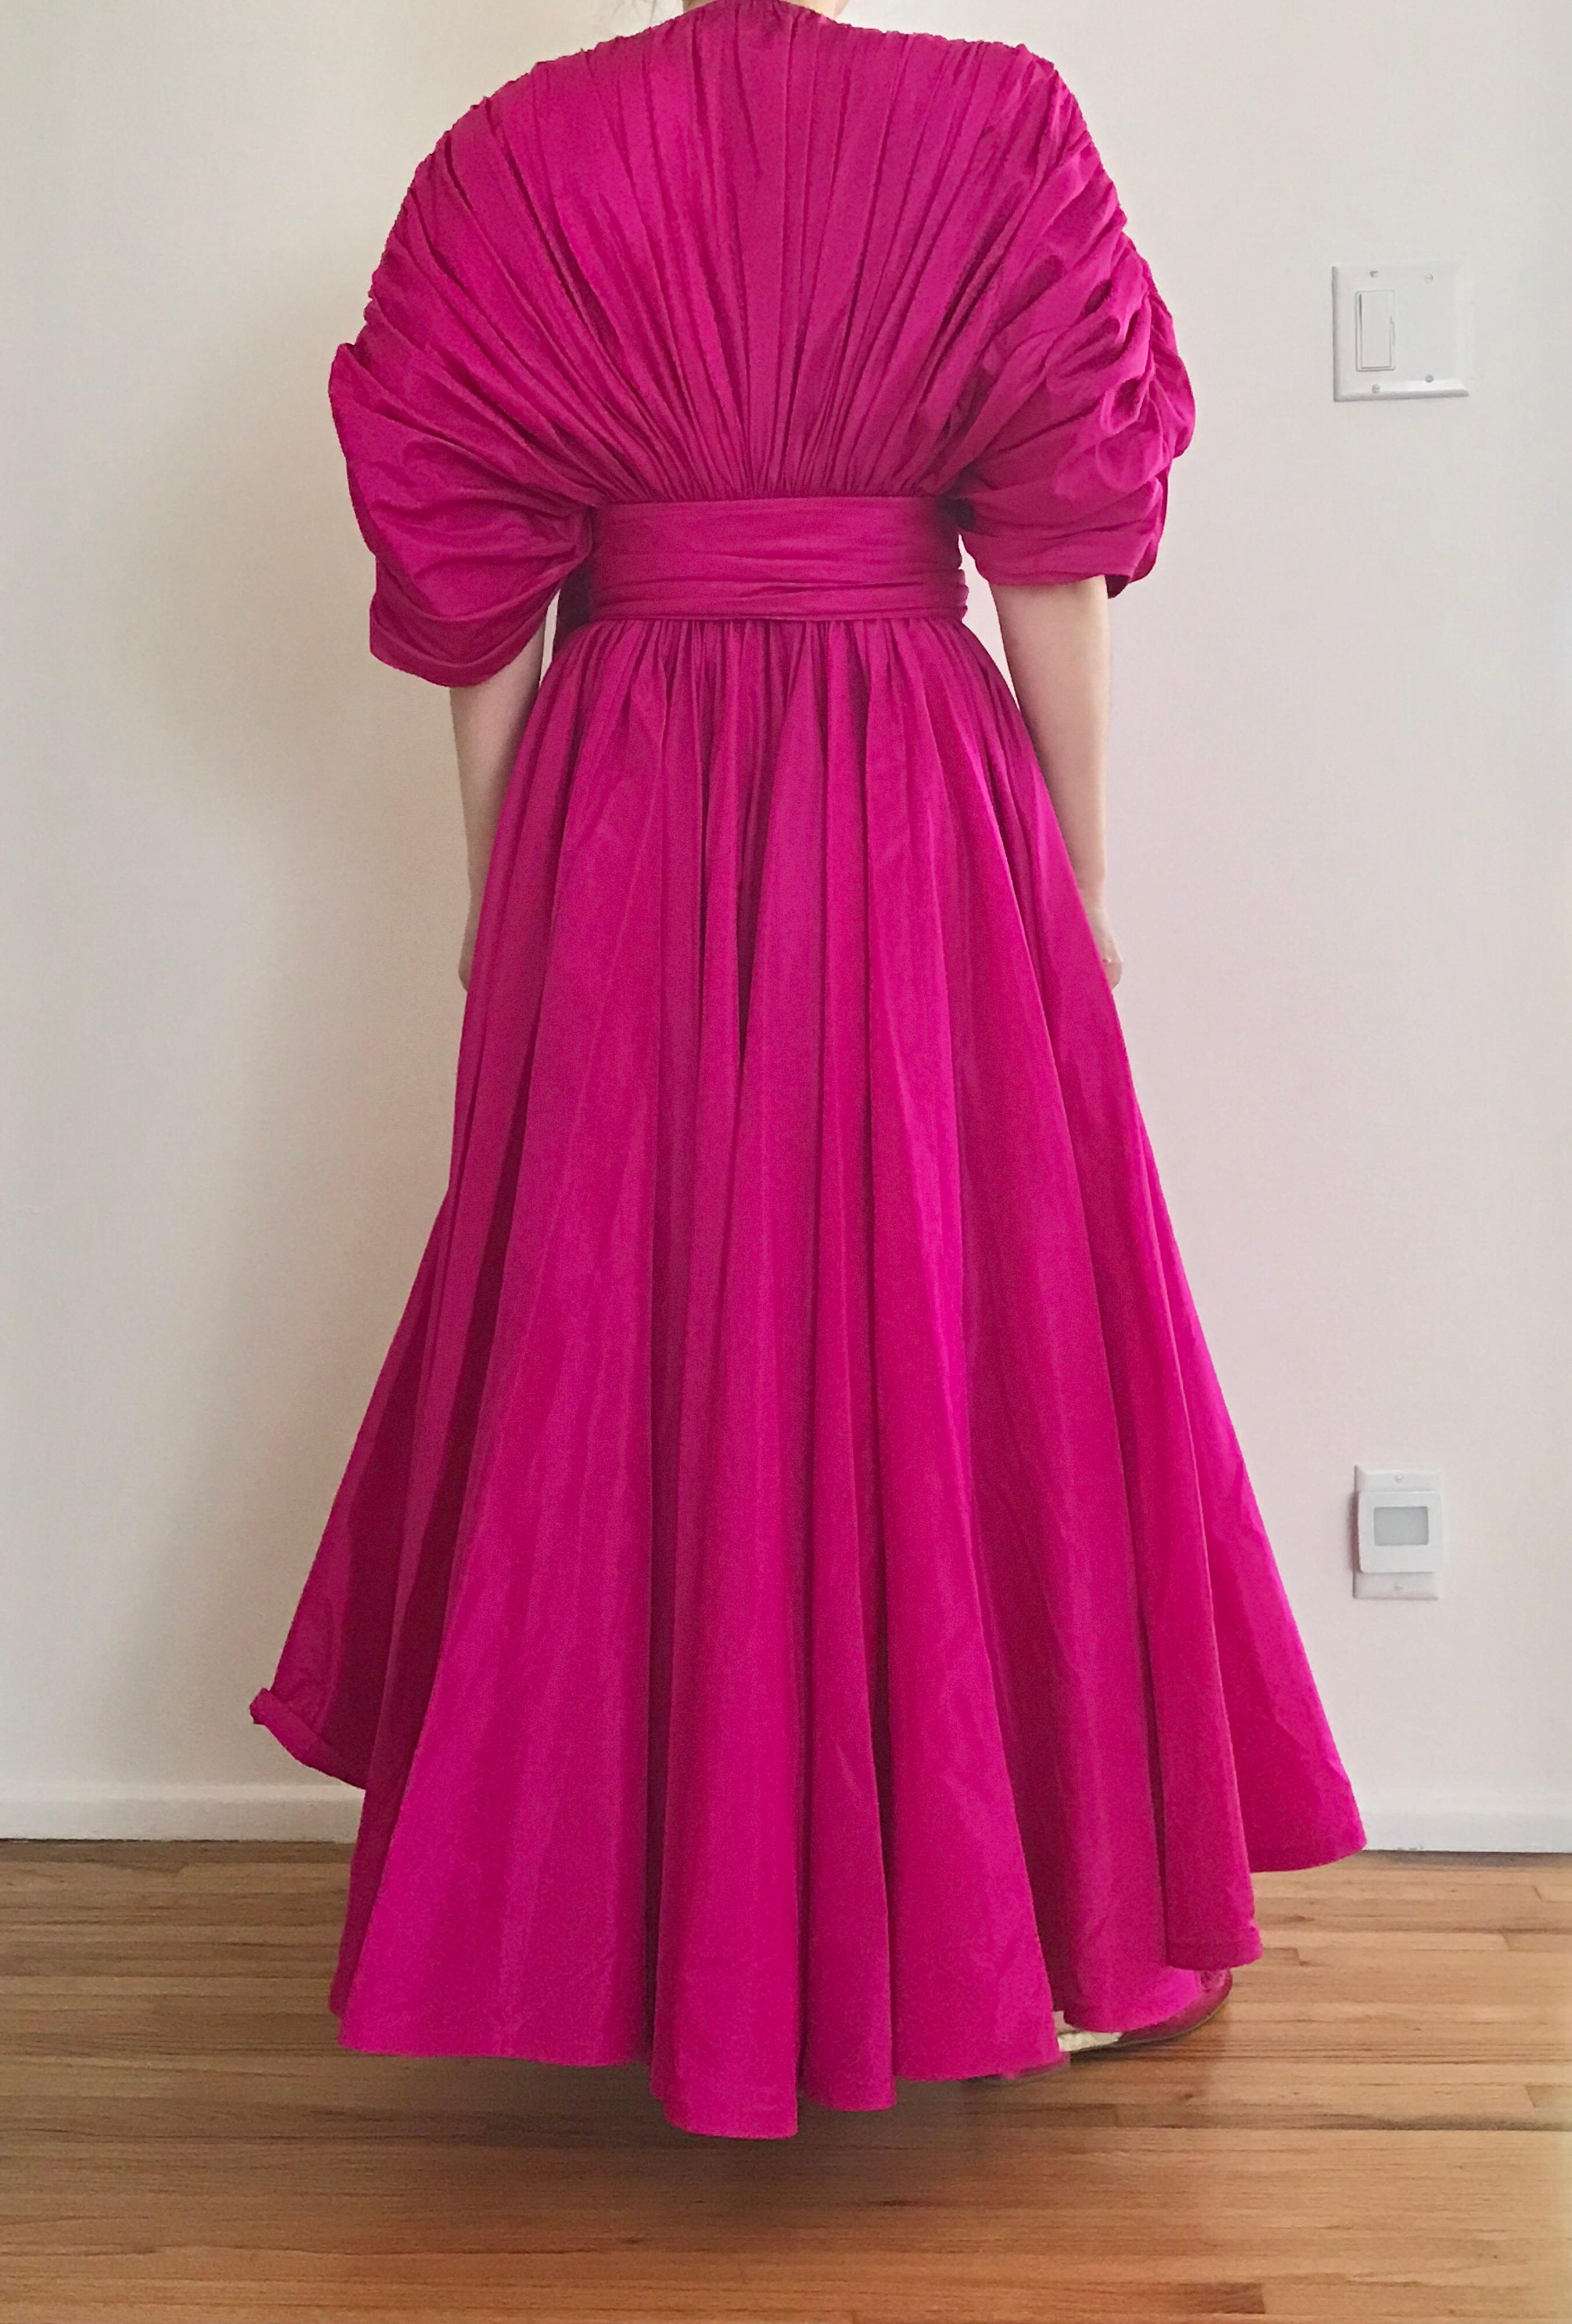 Women's Vintage Oscar De La Renta Magenta Silk Dress